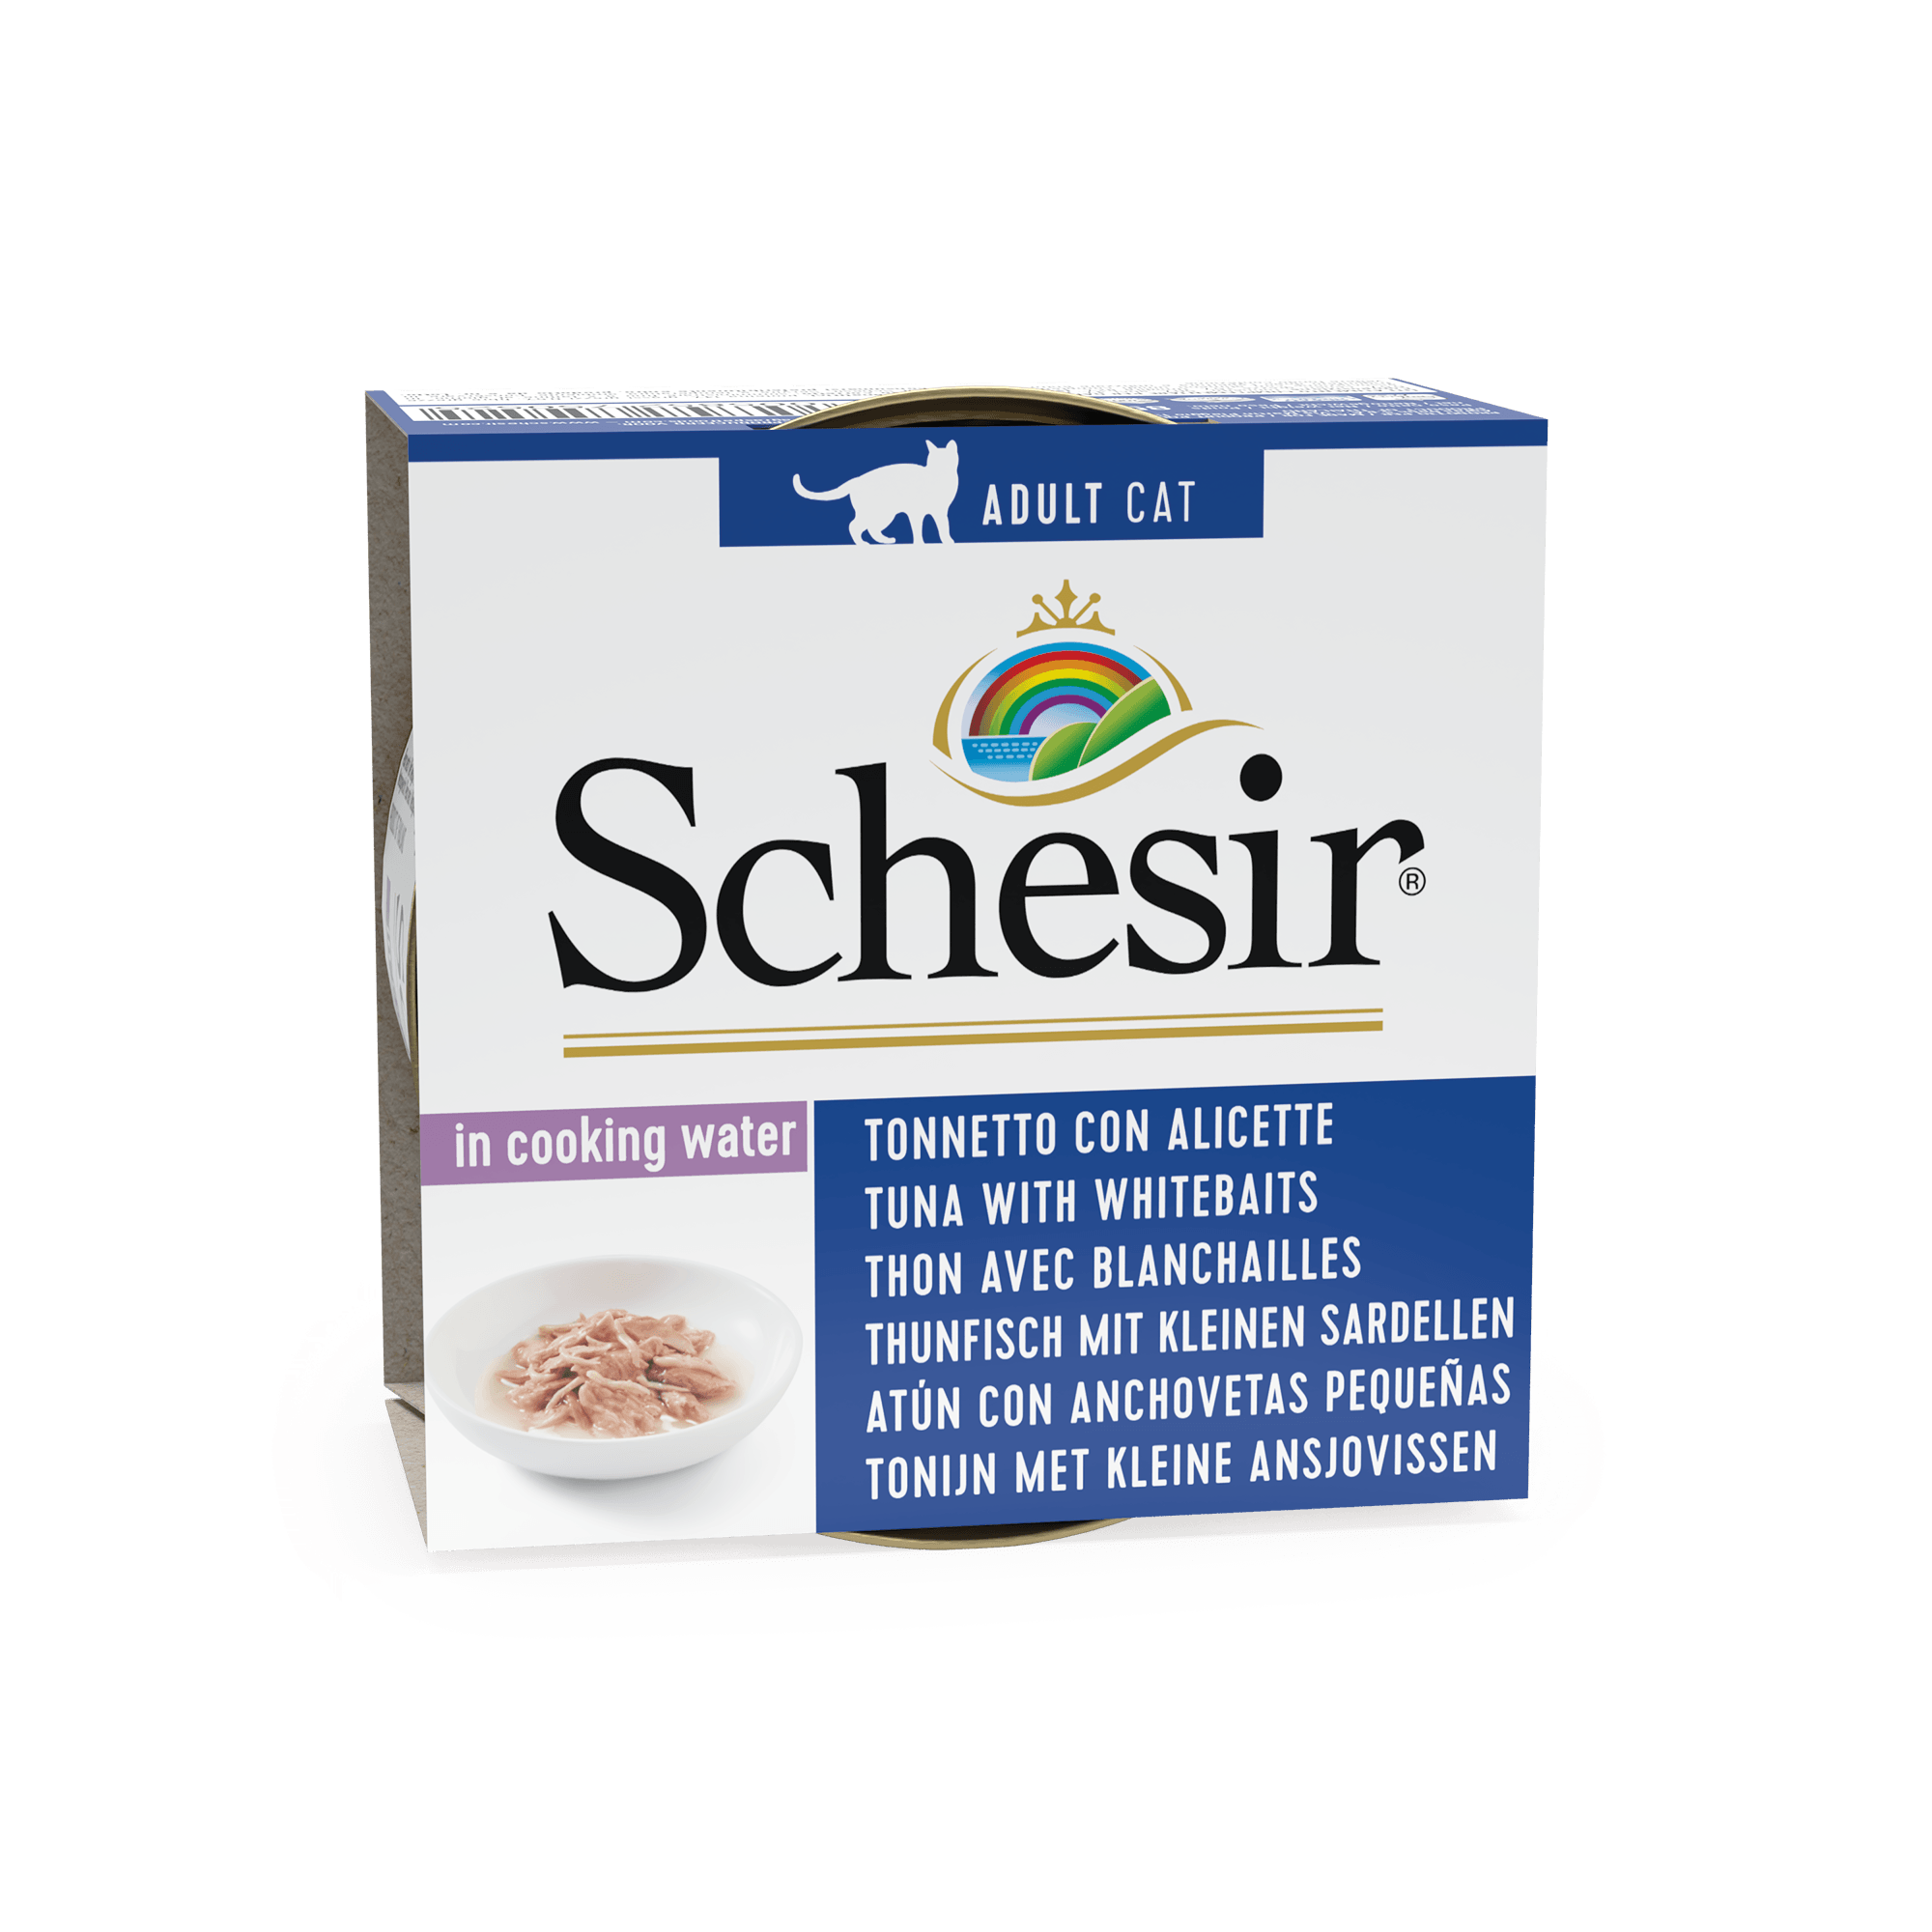 Schesir Tuna with Whitebaits, conserva, 85 g